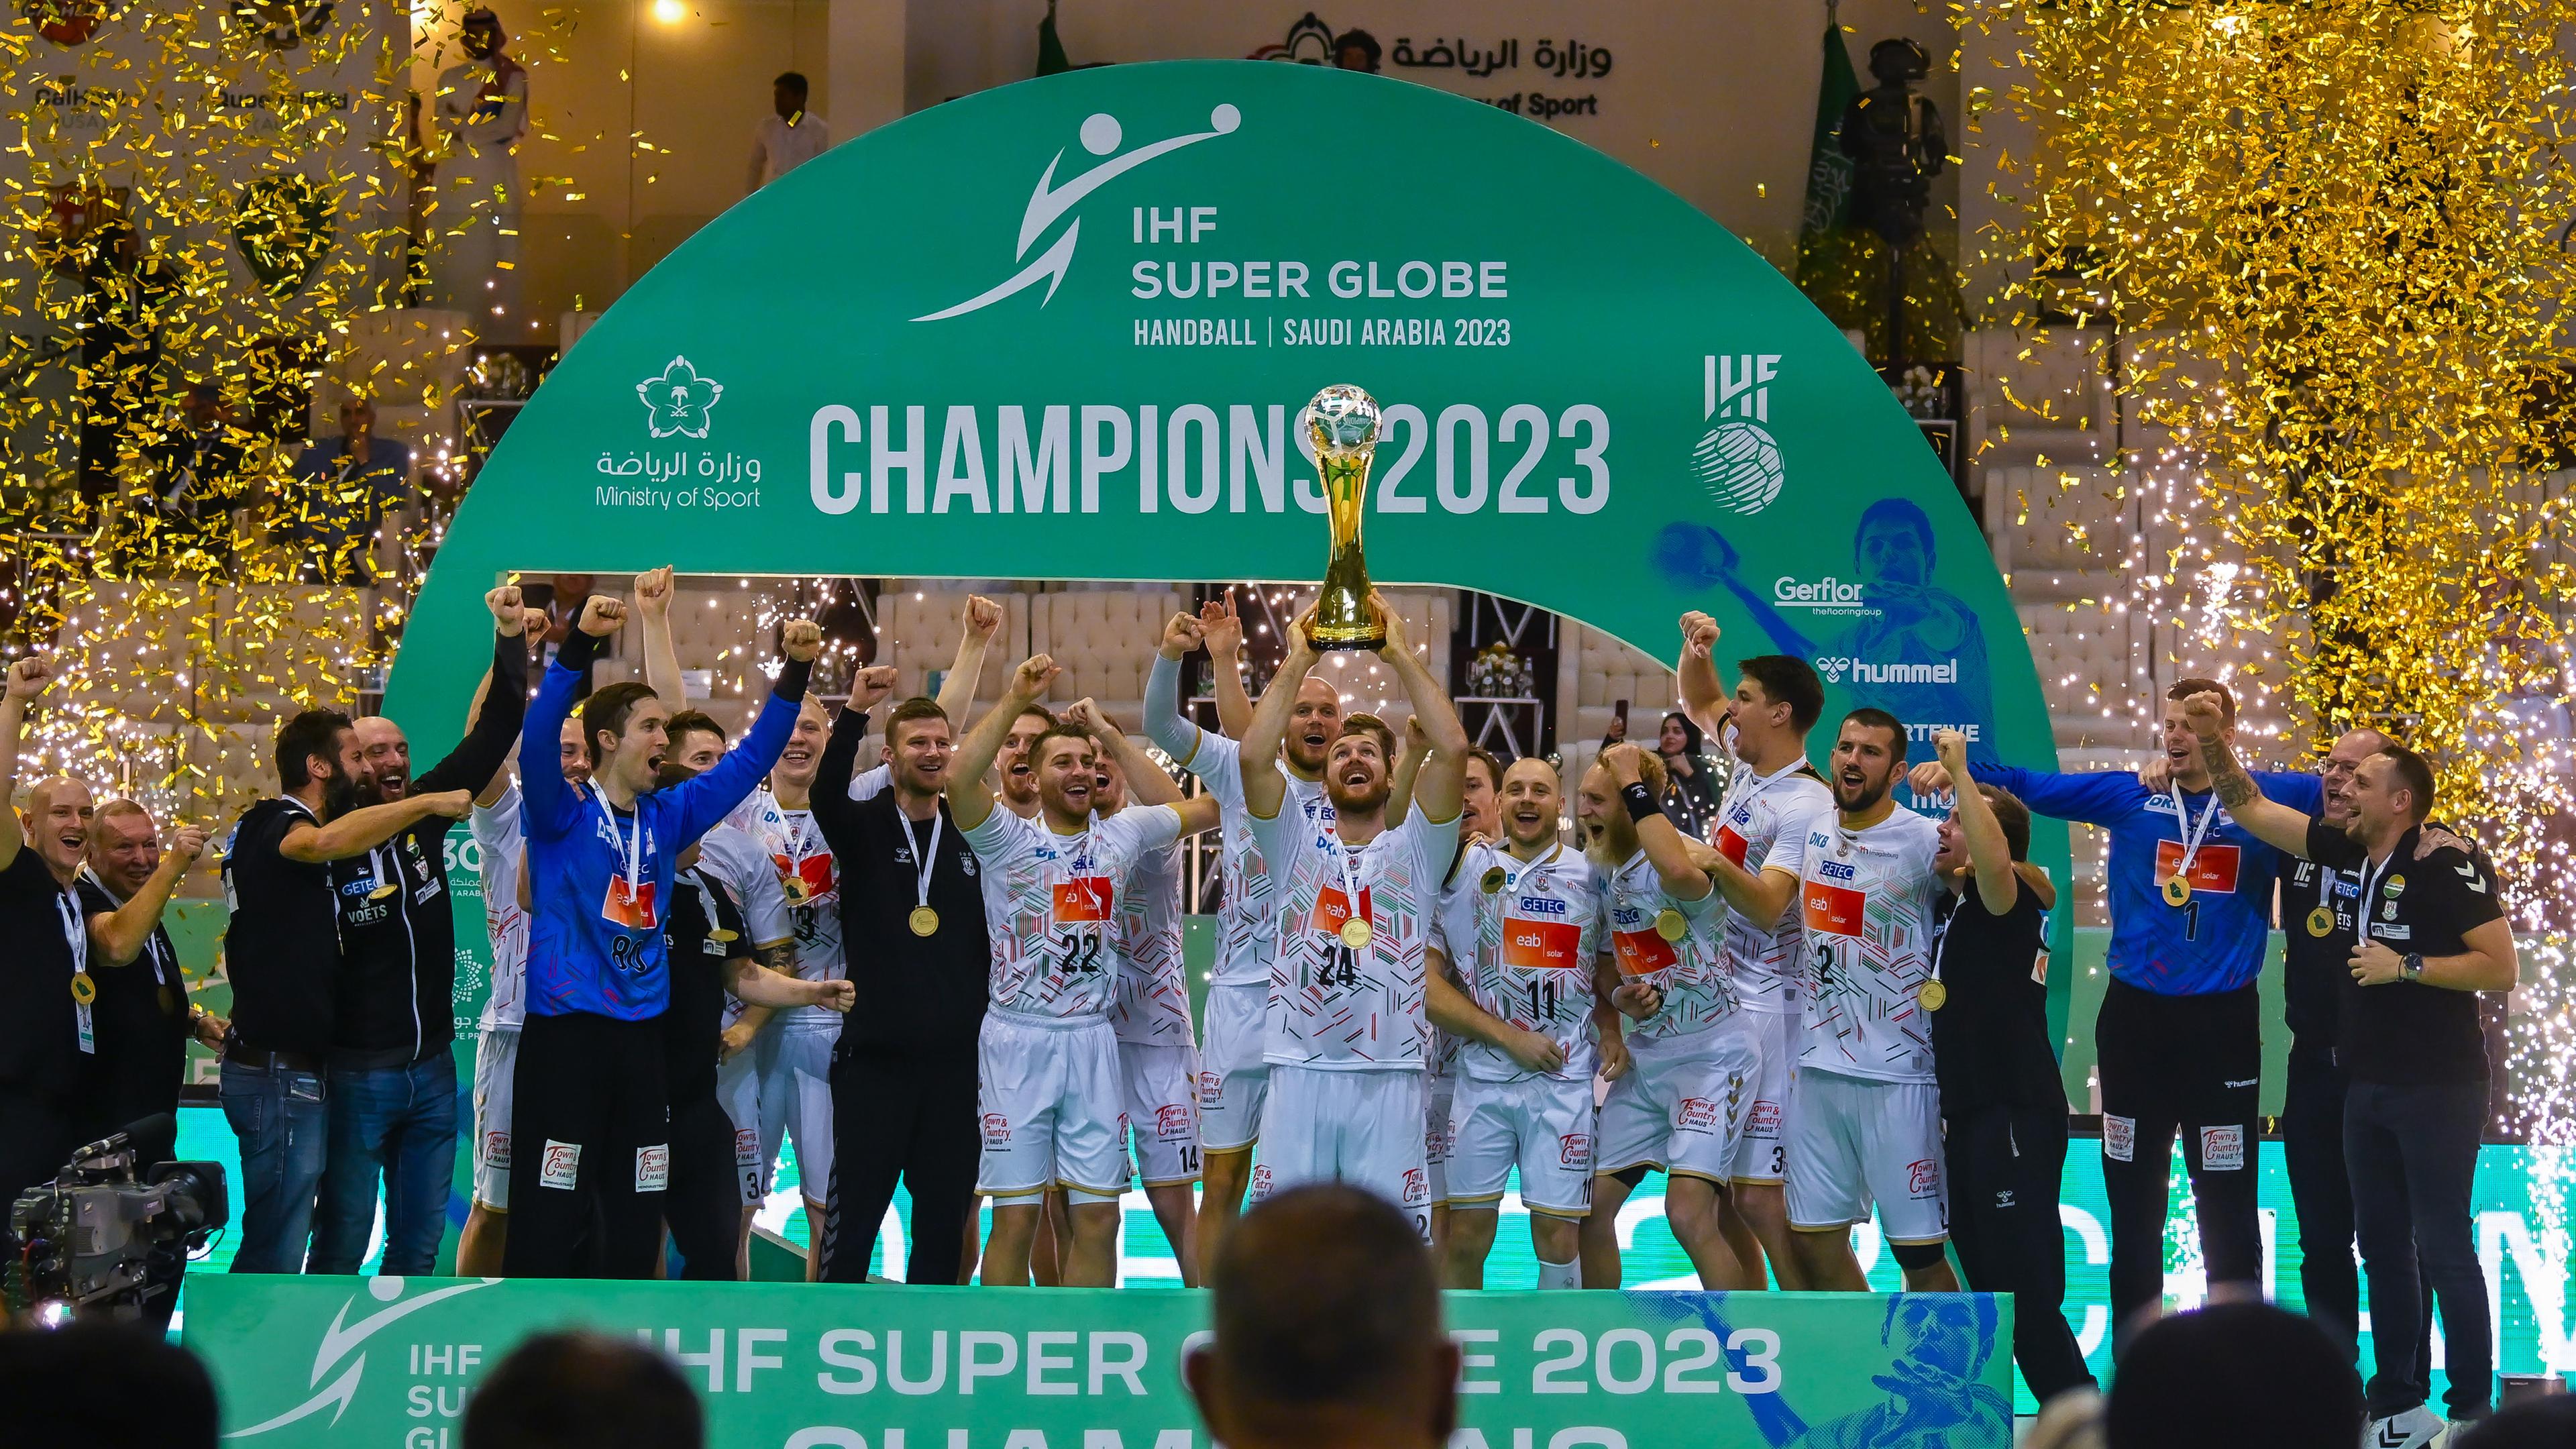 Saudi-Arabien, Dammam: Handball: IHF Super Globe, Füchse Berlin - SC Magdeburg, Finalrunde, Finale. Das Team vom SC Magdeburg zeigt den gewonnenen Pokal.